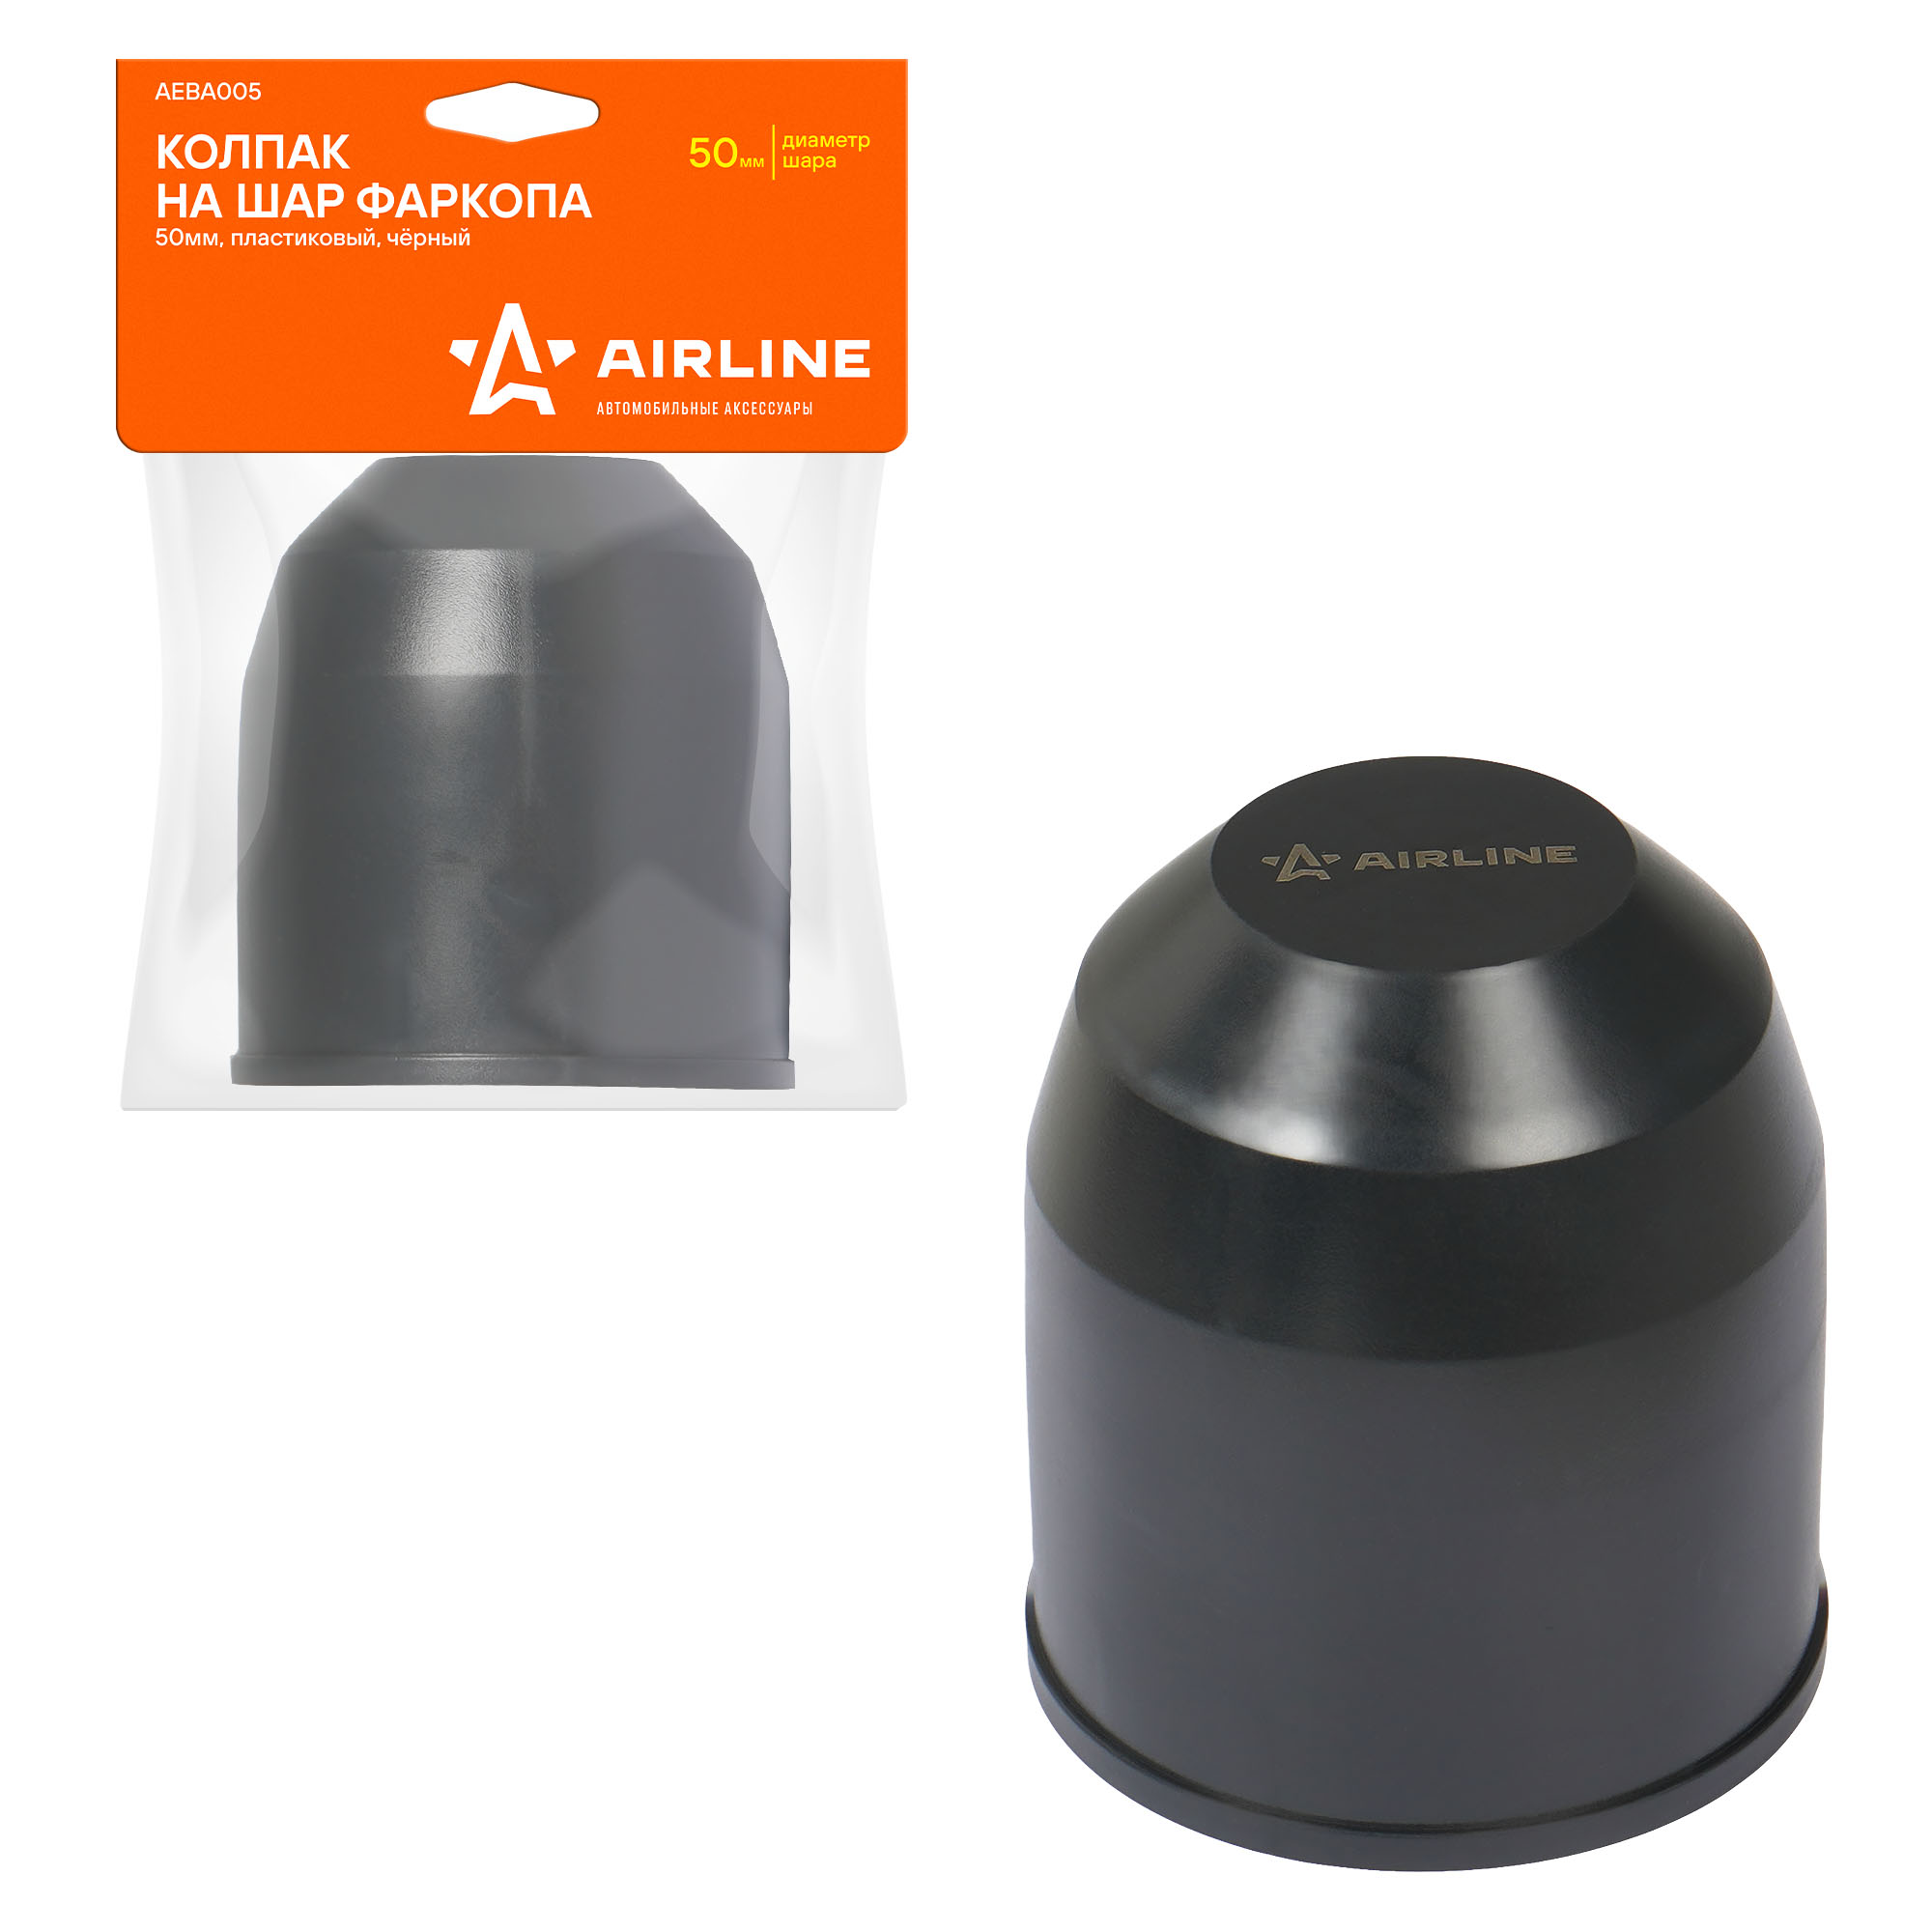 Колпак на шар фаркопа 50мм пластиковый чёрный AIRLINE AEBA005